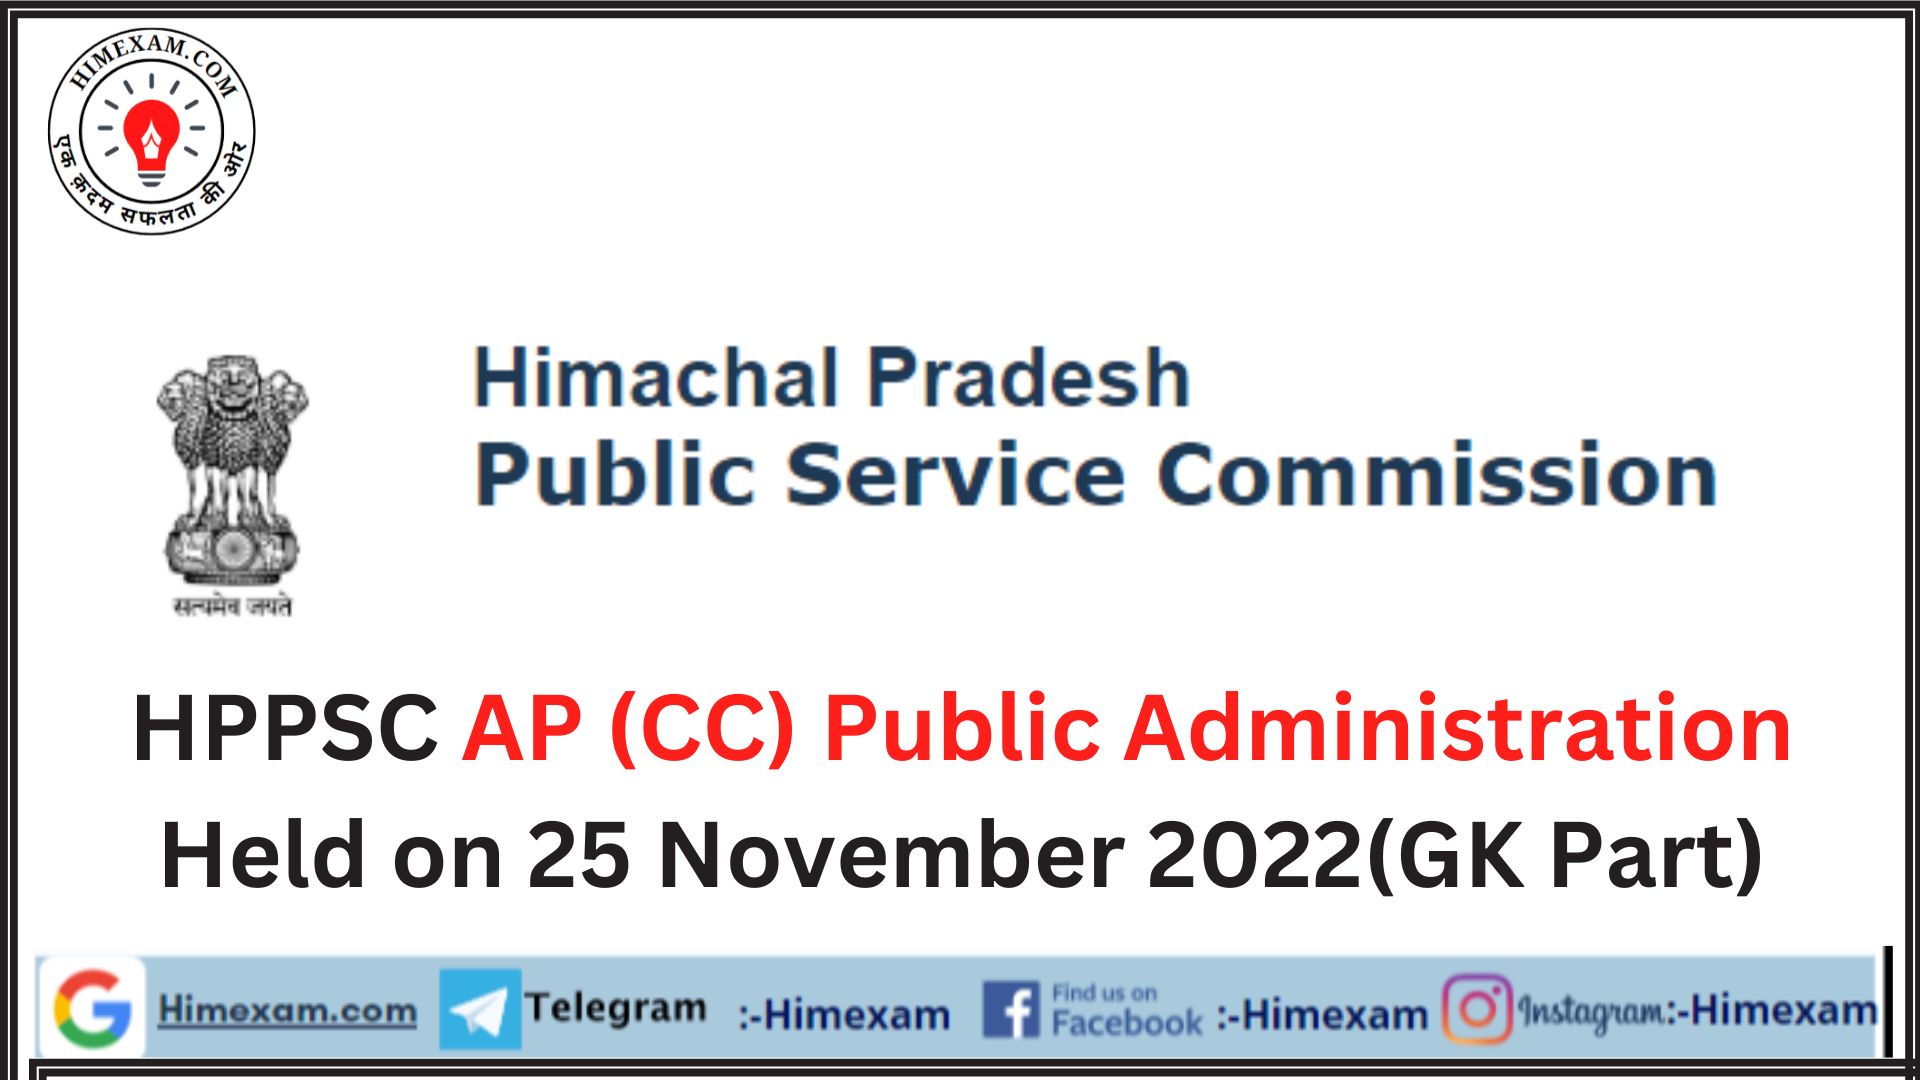 HPPSC AP (CC) Public Administration Held on 25 November 2022(GK Part)